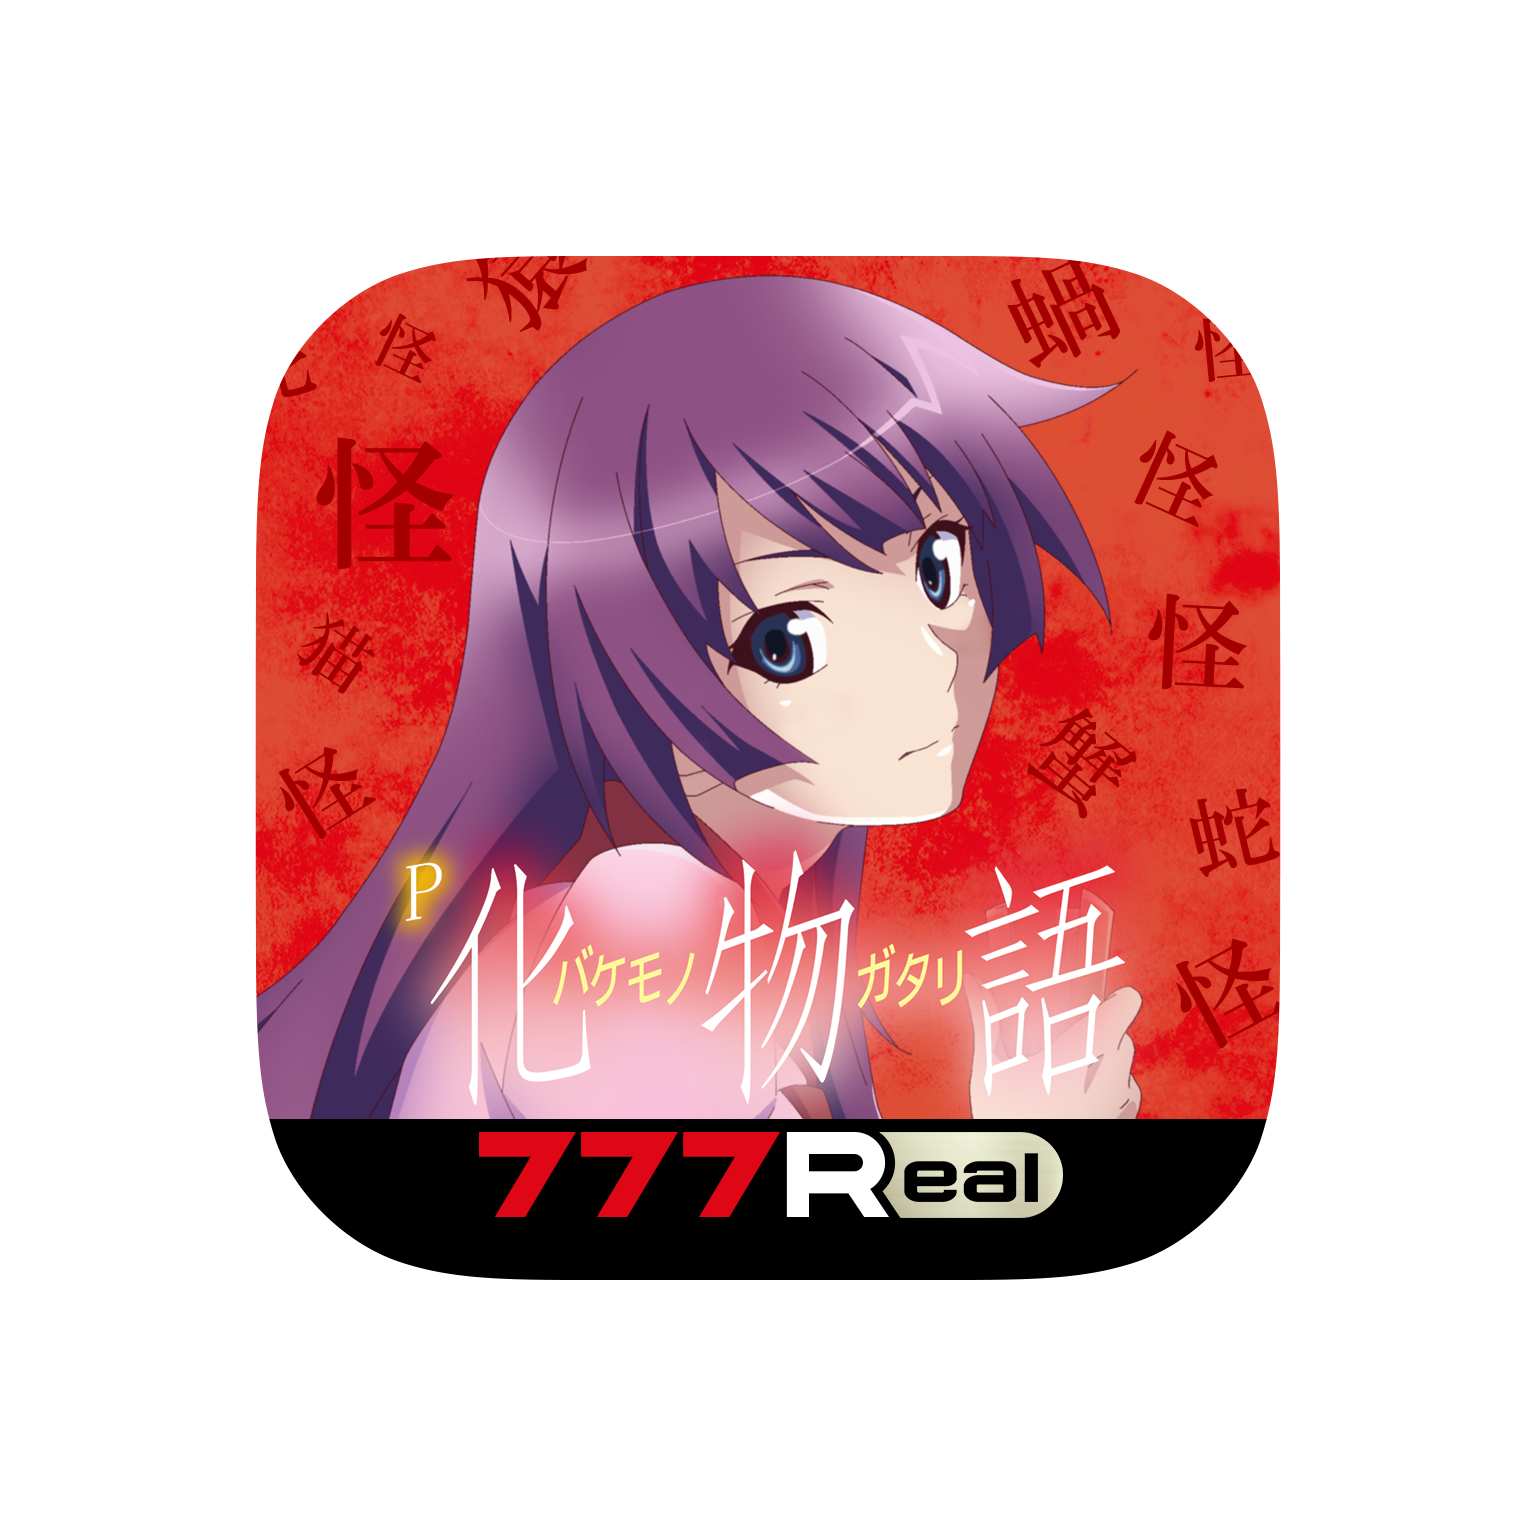 「P化物語 319ver.」が無料ぱちんこ・パチスロアプリ「777Real」に登場！